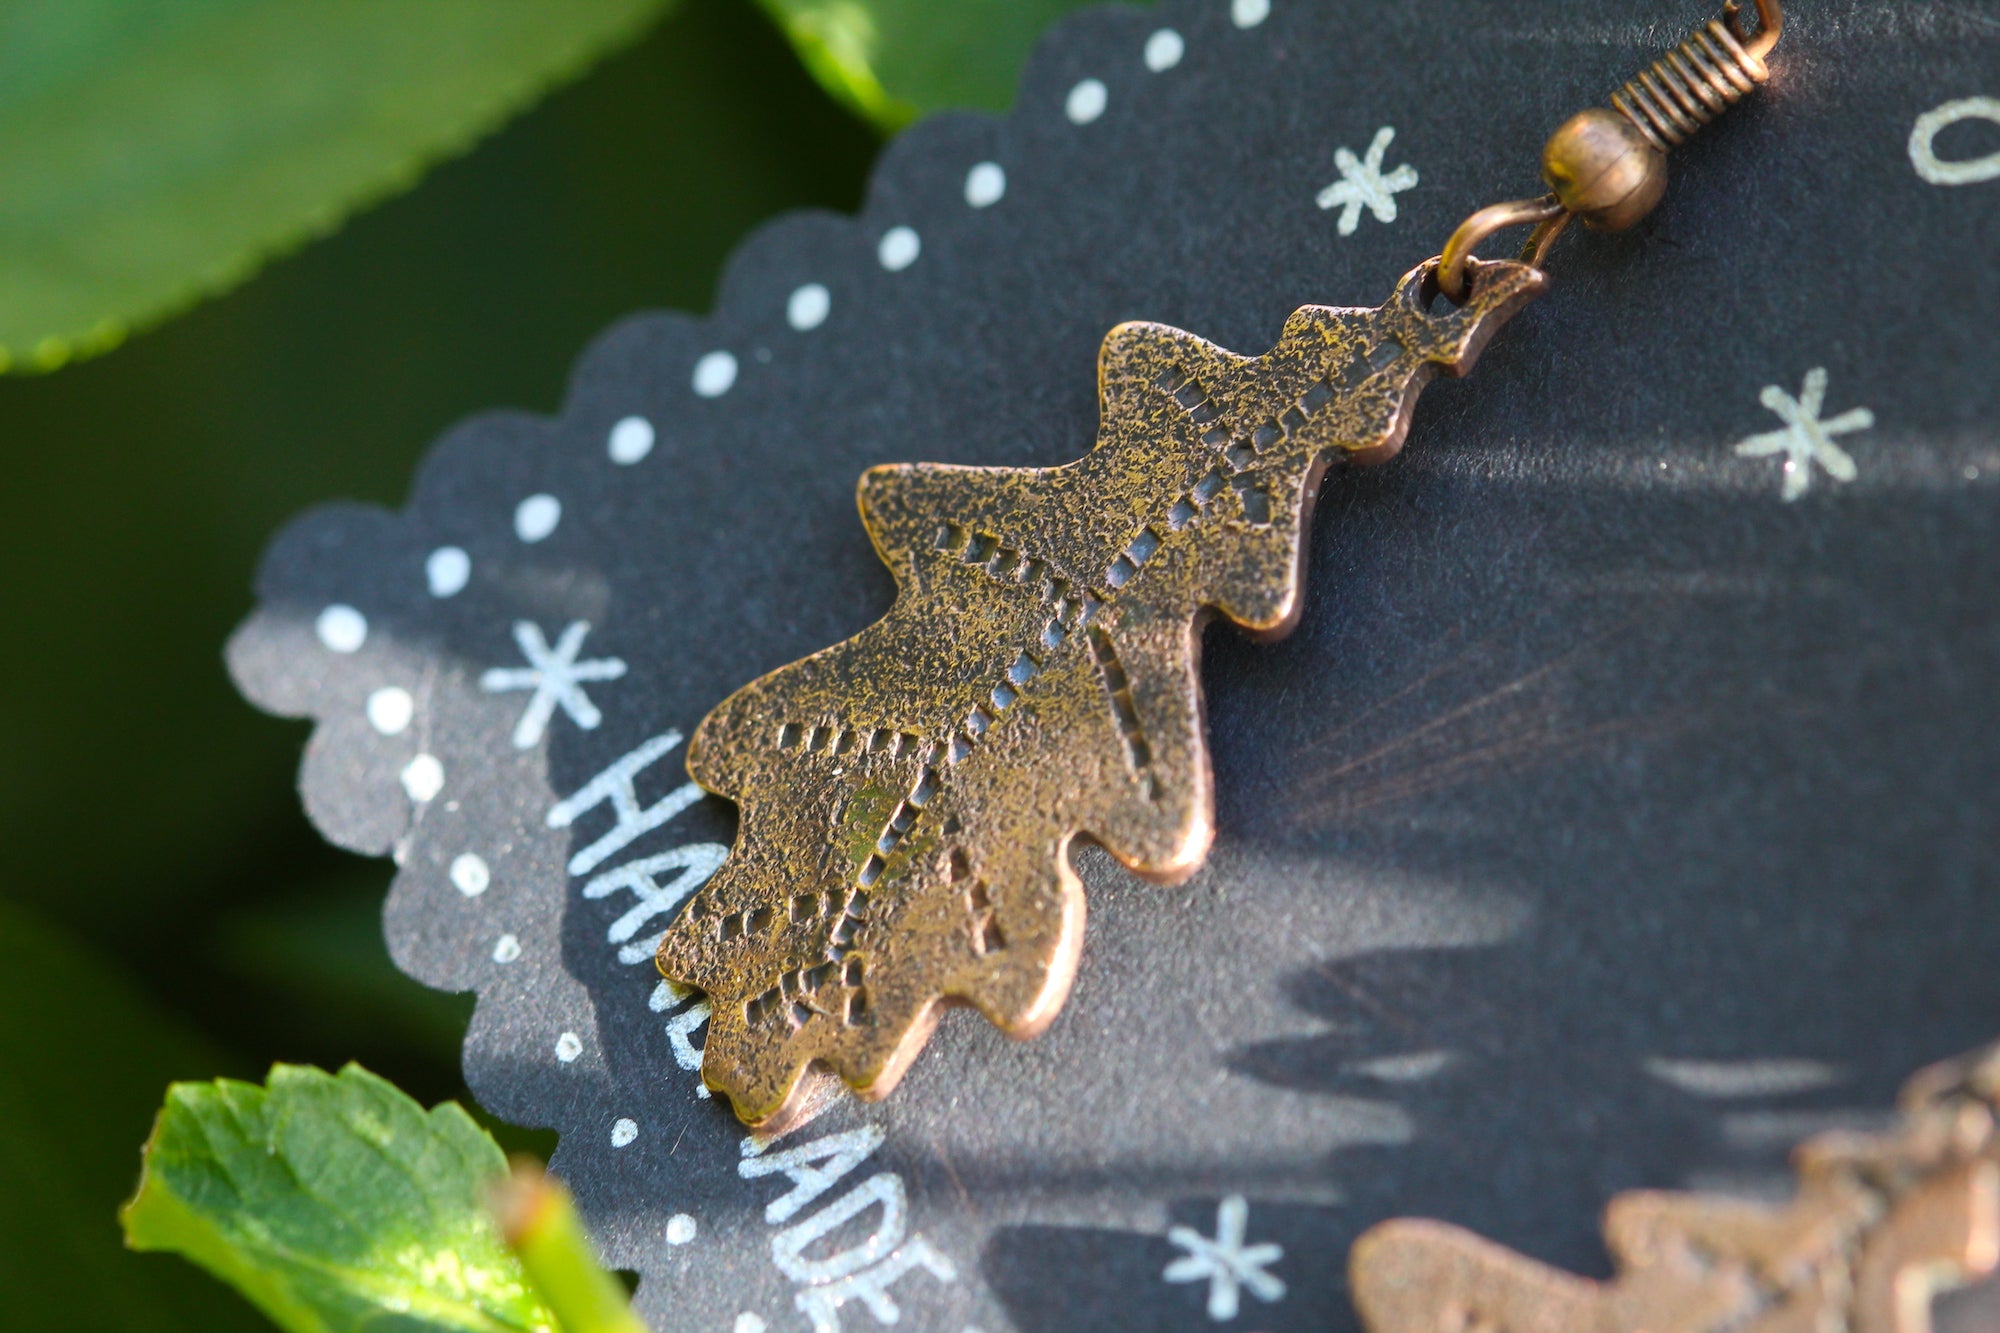 SKOGSRÅ Handmade Copper Oak Leaf Earrings